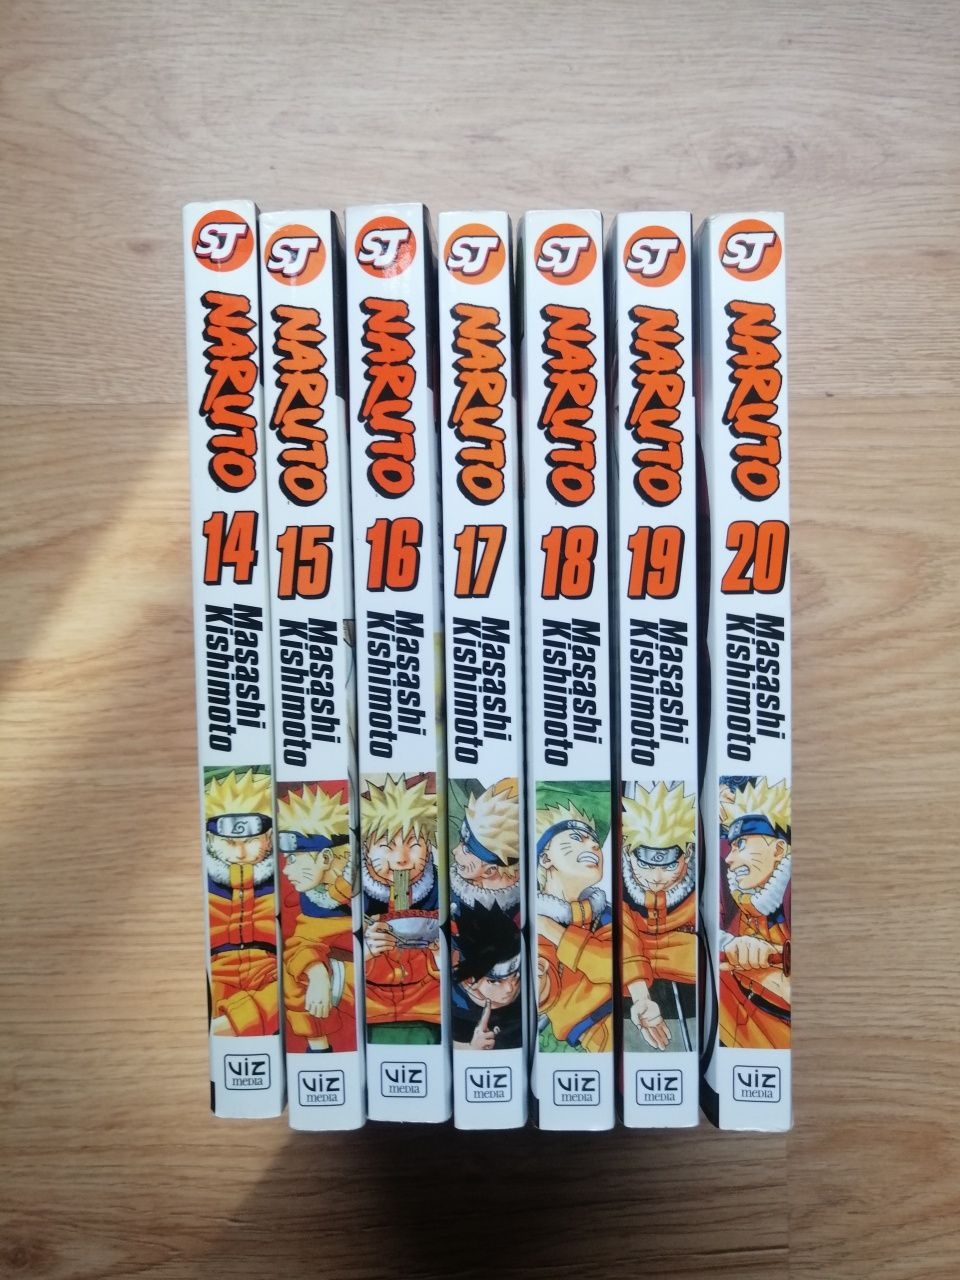 Naruto - Mangas em inglês (7 números seguidos-14,15,16,17,18,19,20)